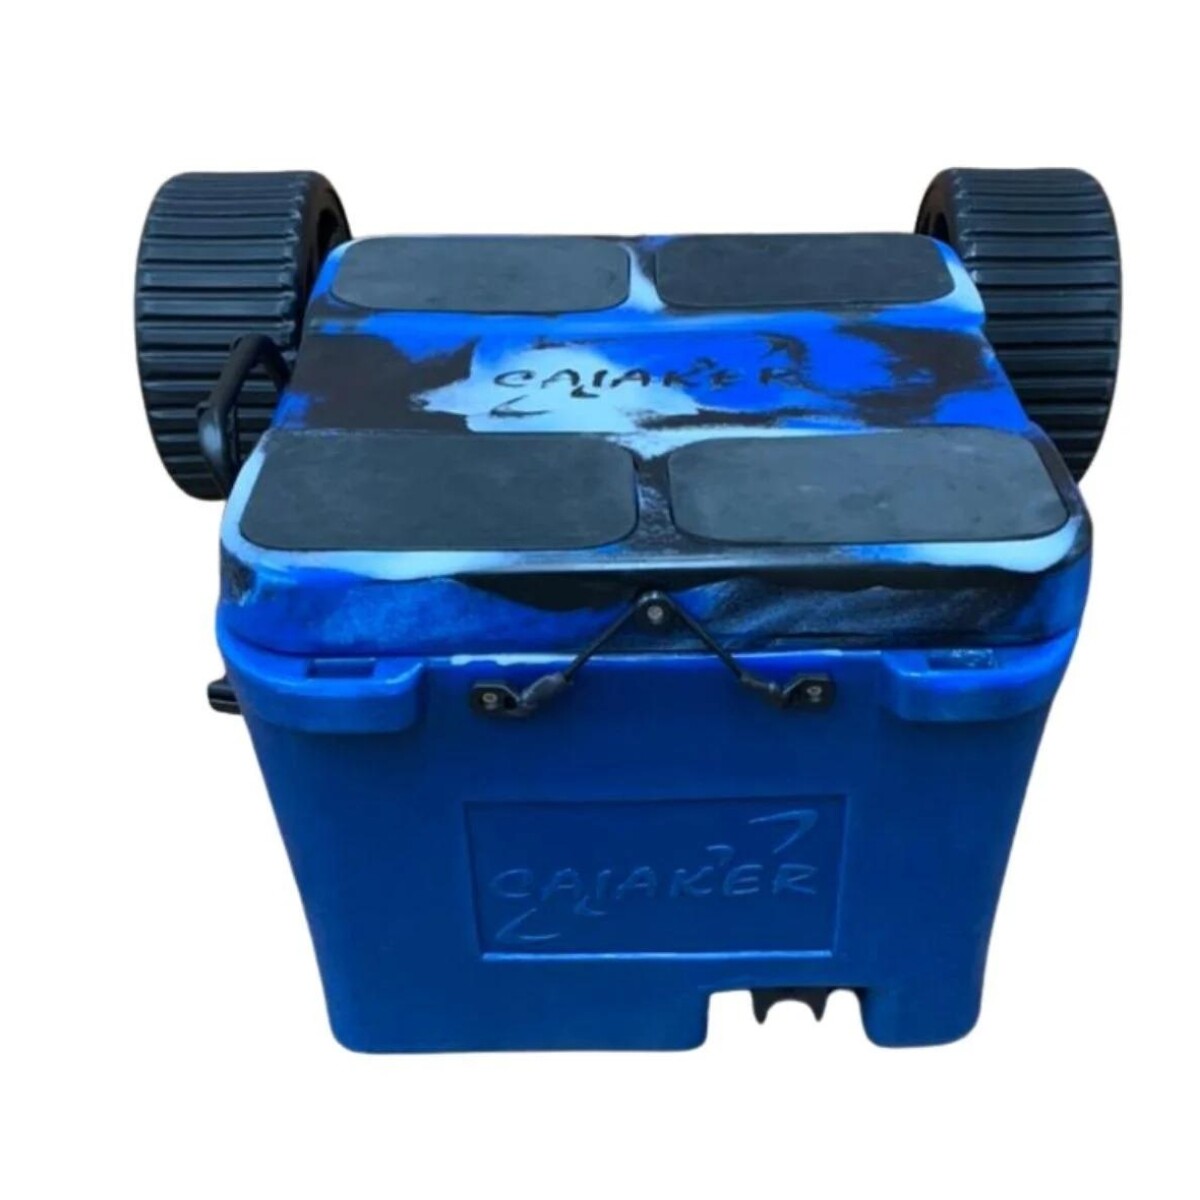 Carrito conservadora para kayaks Smart Cooler - Caiaker - Camo Azul 